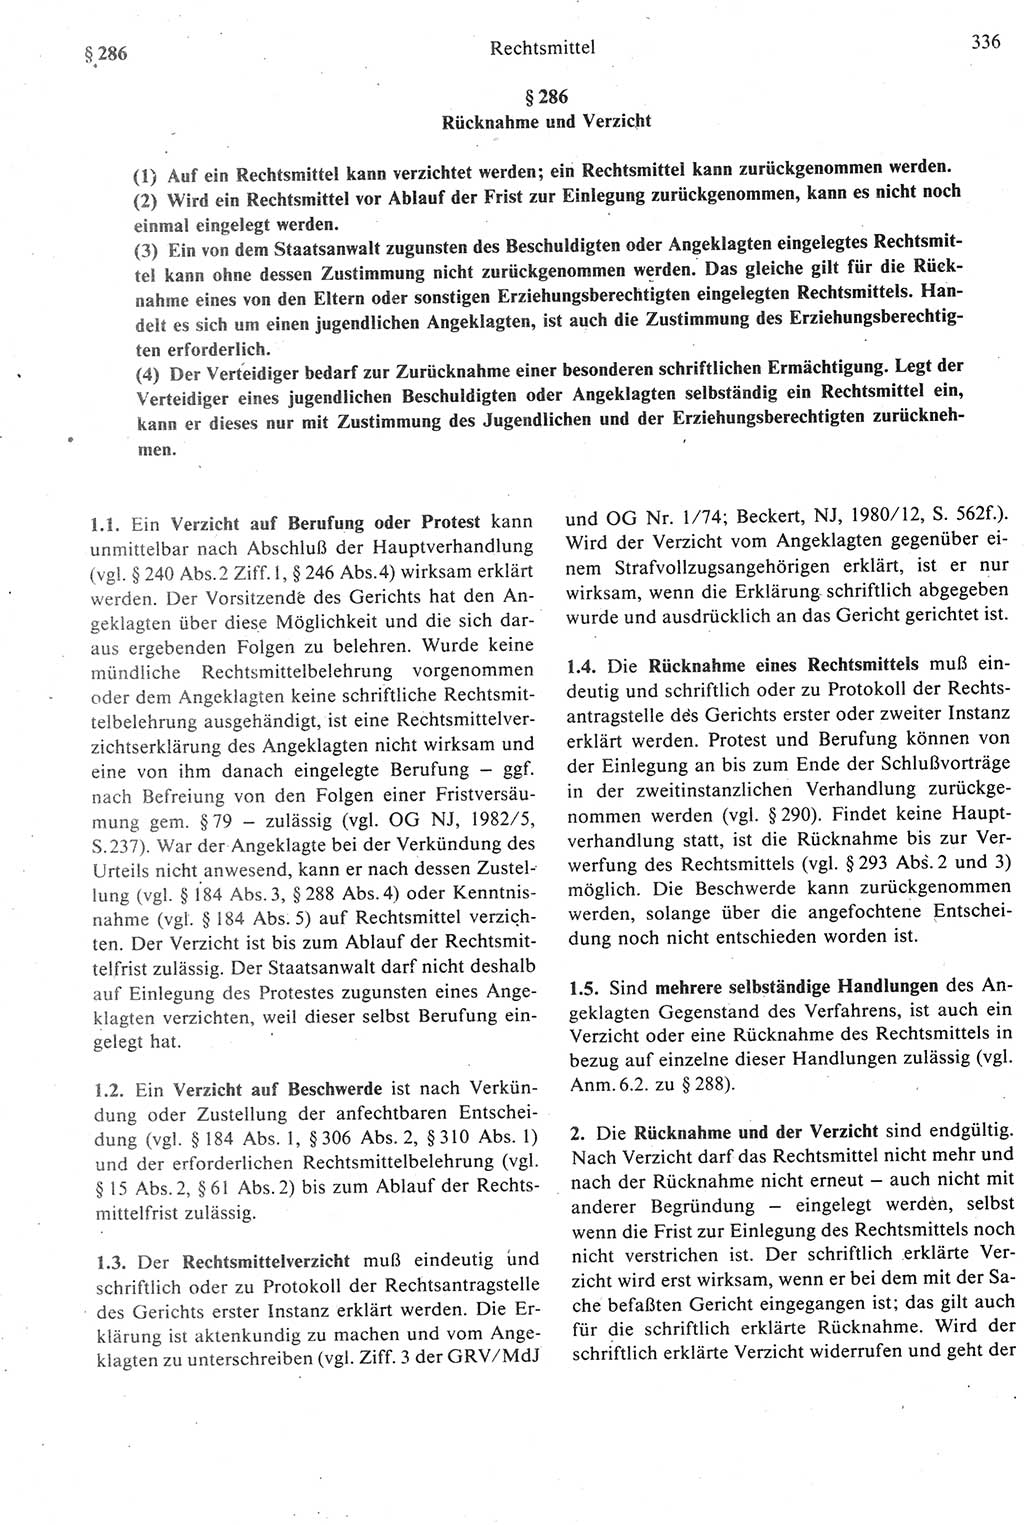 Strafprozeßrecht der DDR [Deutsche Demokratische Republik], Kommentar zur Strafprozeßordnung (StPO) 1987, Seite 336 (Strafprozeßr. DDR Komm. StPO 1987, S. 336)